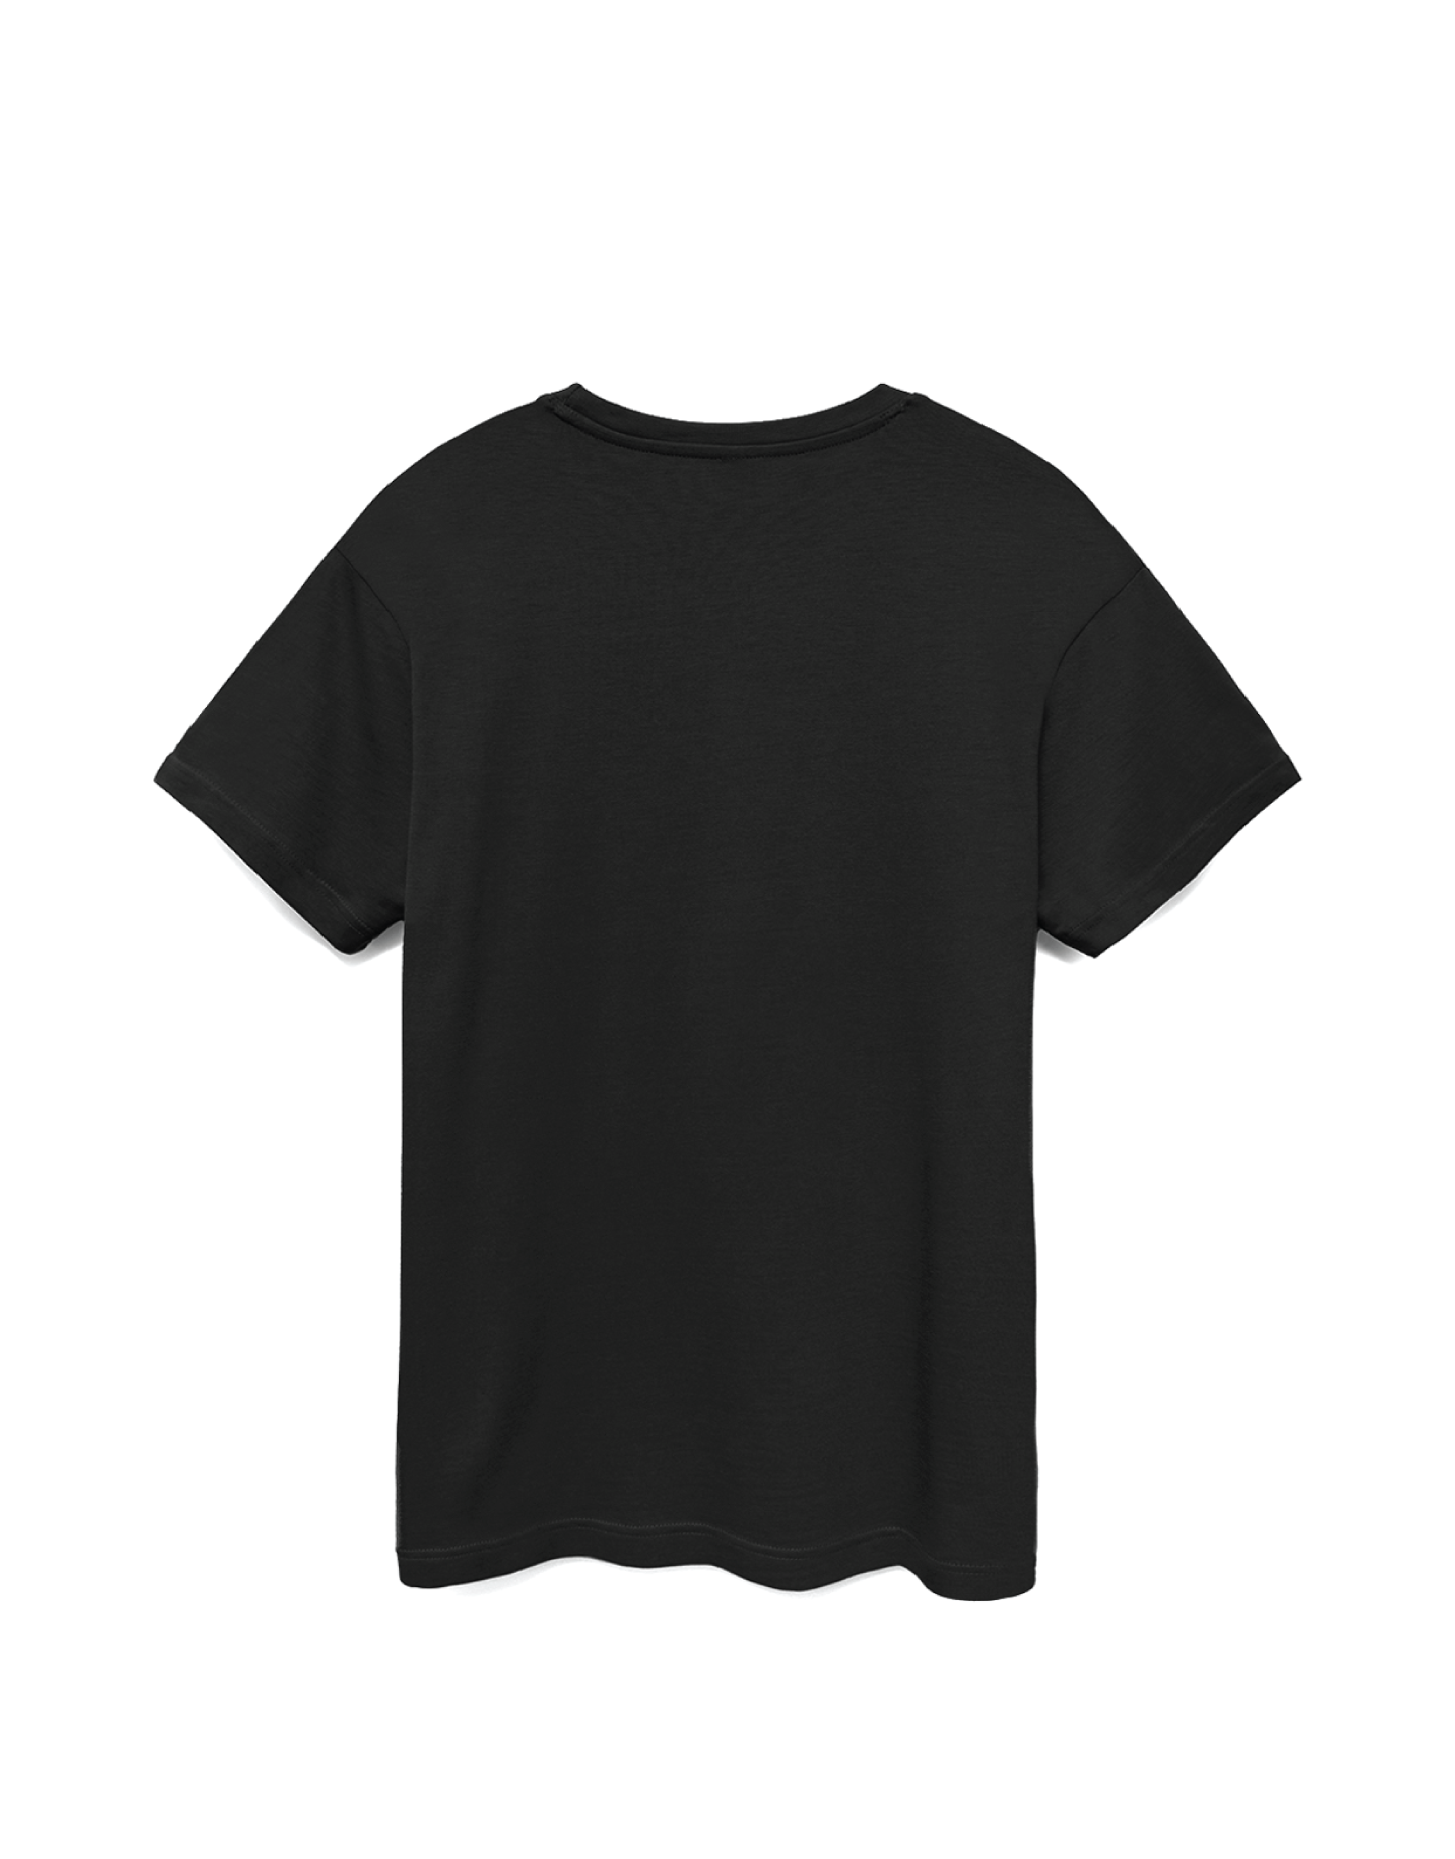 Compound / Black T-shirt – Social Element